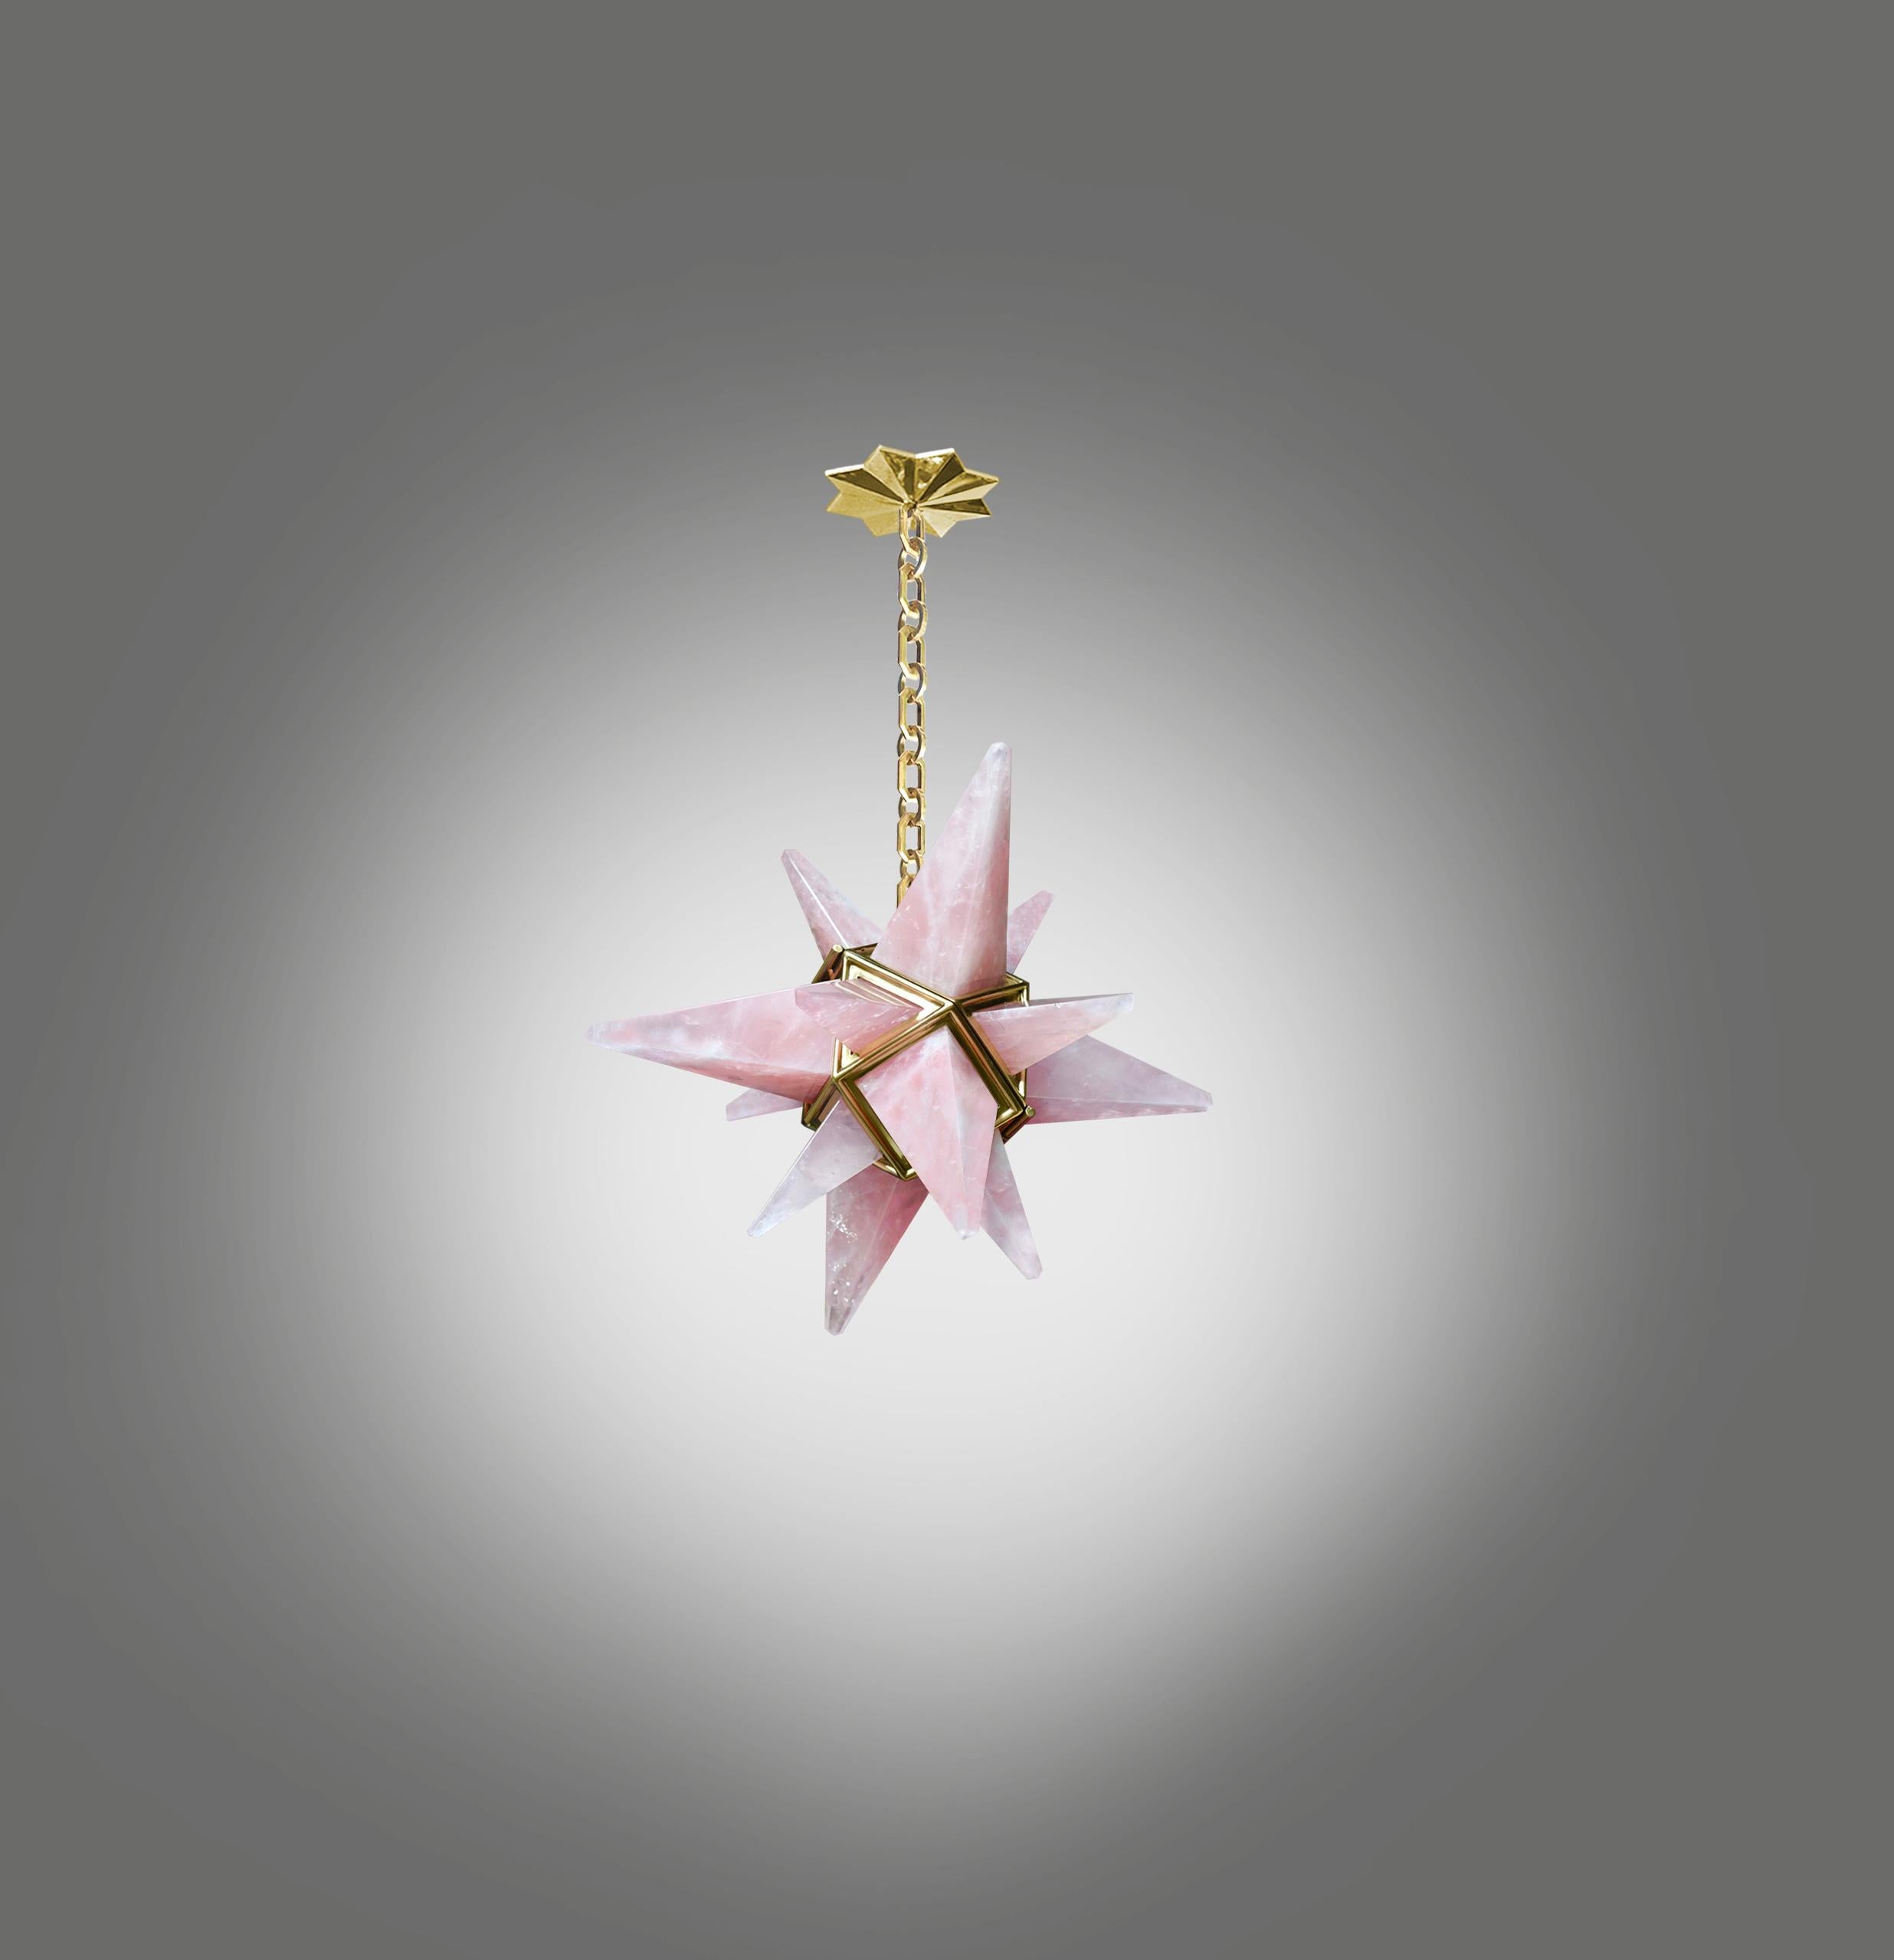 Stern rosa Bergkristall-Kronleuchter mit poliertem Messingrahmen. Erstellt von Phoenix Gallery, NYC.
Eine Steckdose installiert. Verwenden Sie eine 75-Watt-LED-Kandelaberlampe.
Glühbirne mitgeliefert.
